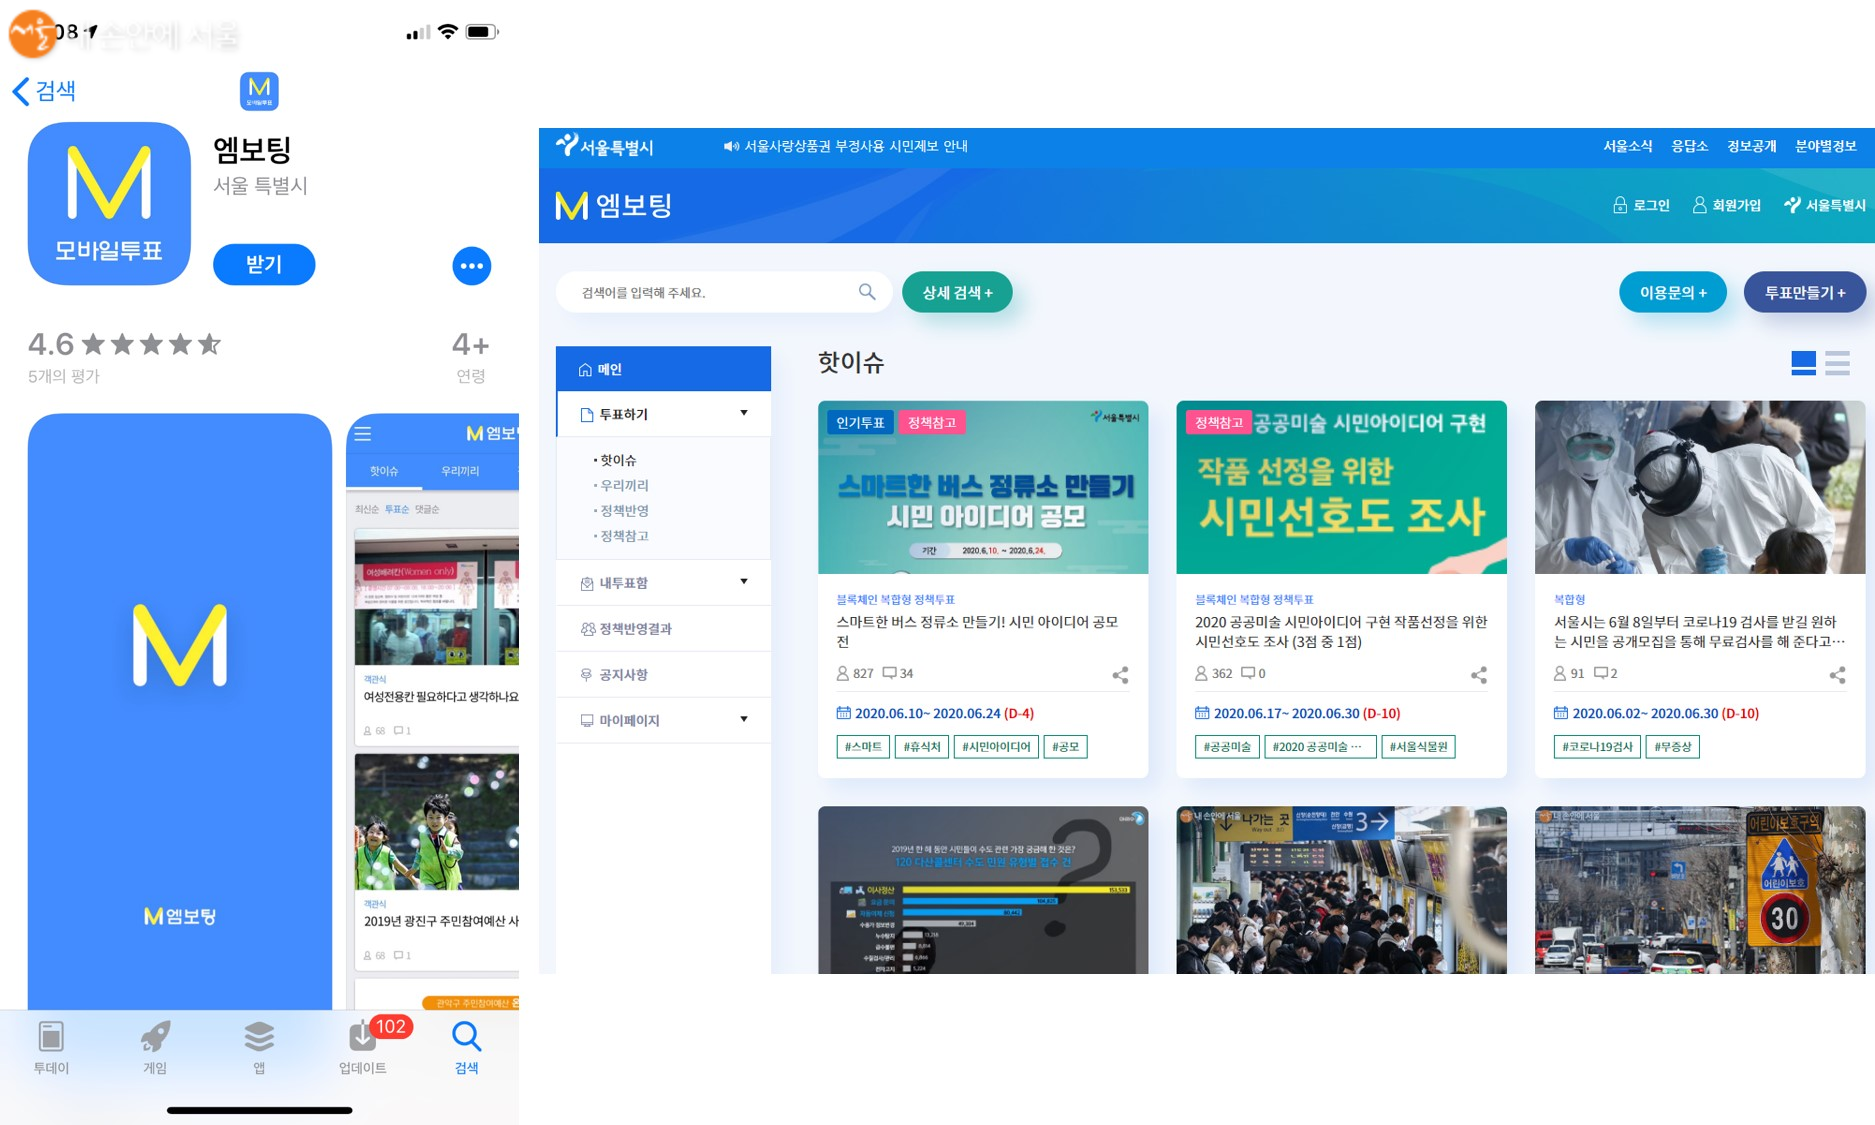 서울시 엠보팅은 모바일 앱(사진 왼쪽)과 홈페이지 모두 이용이 가능하다. 